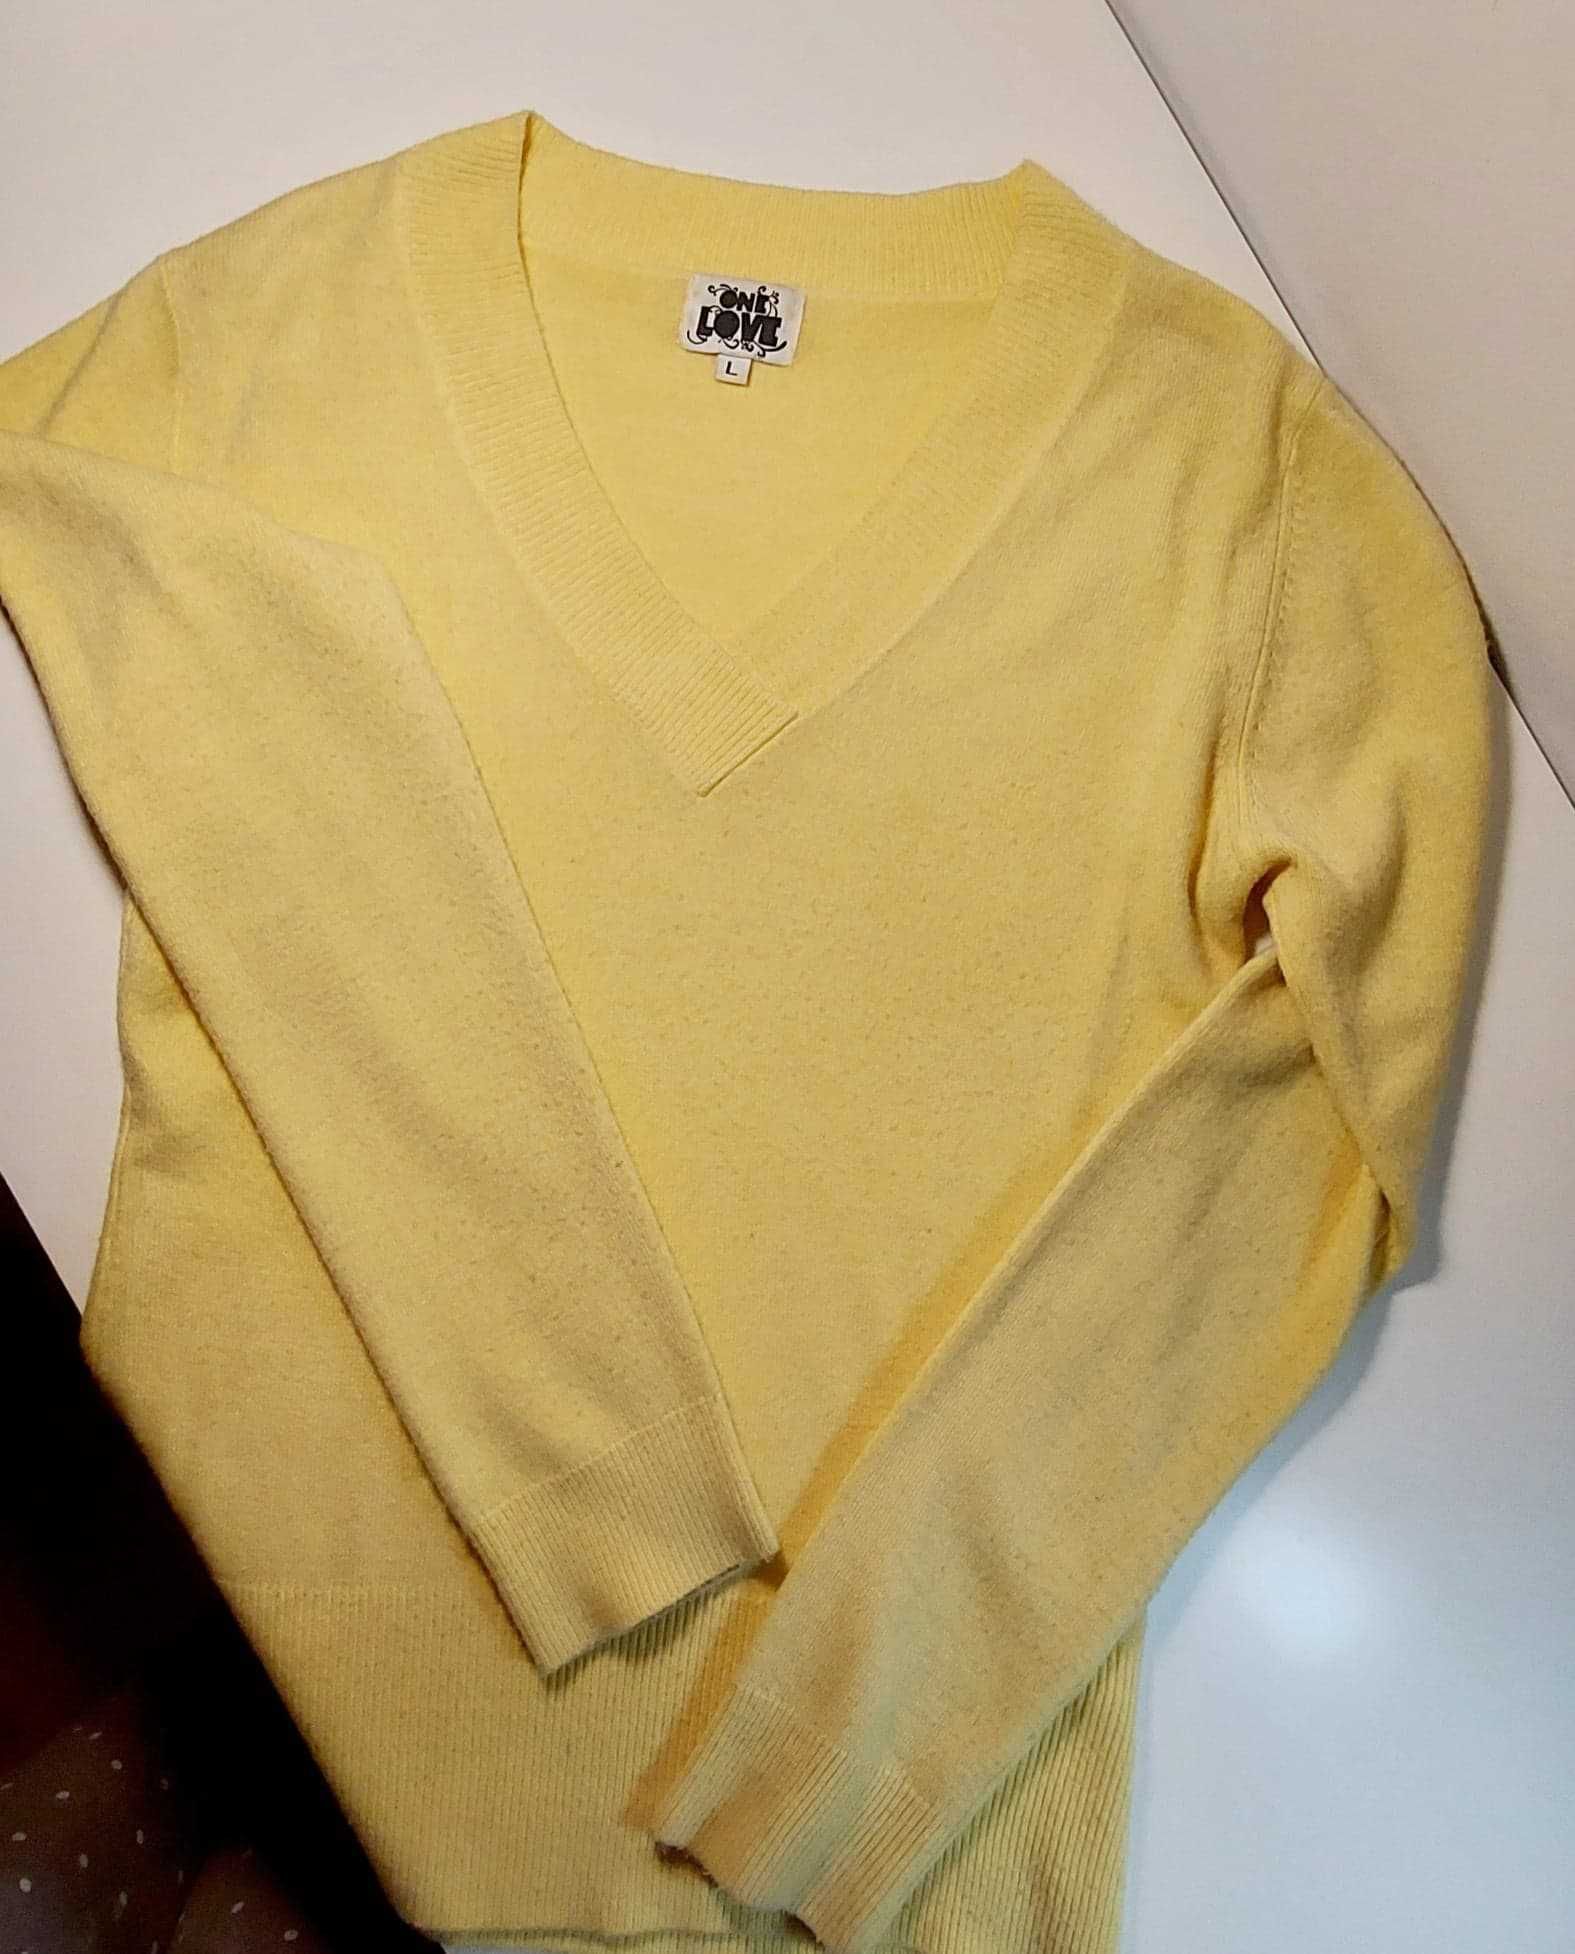 Żółty, optymistyczny sweterek w serek.